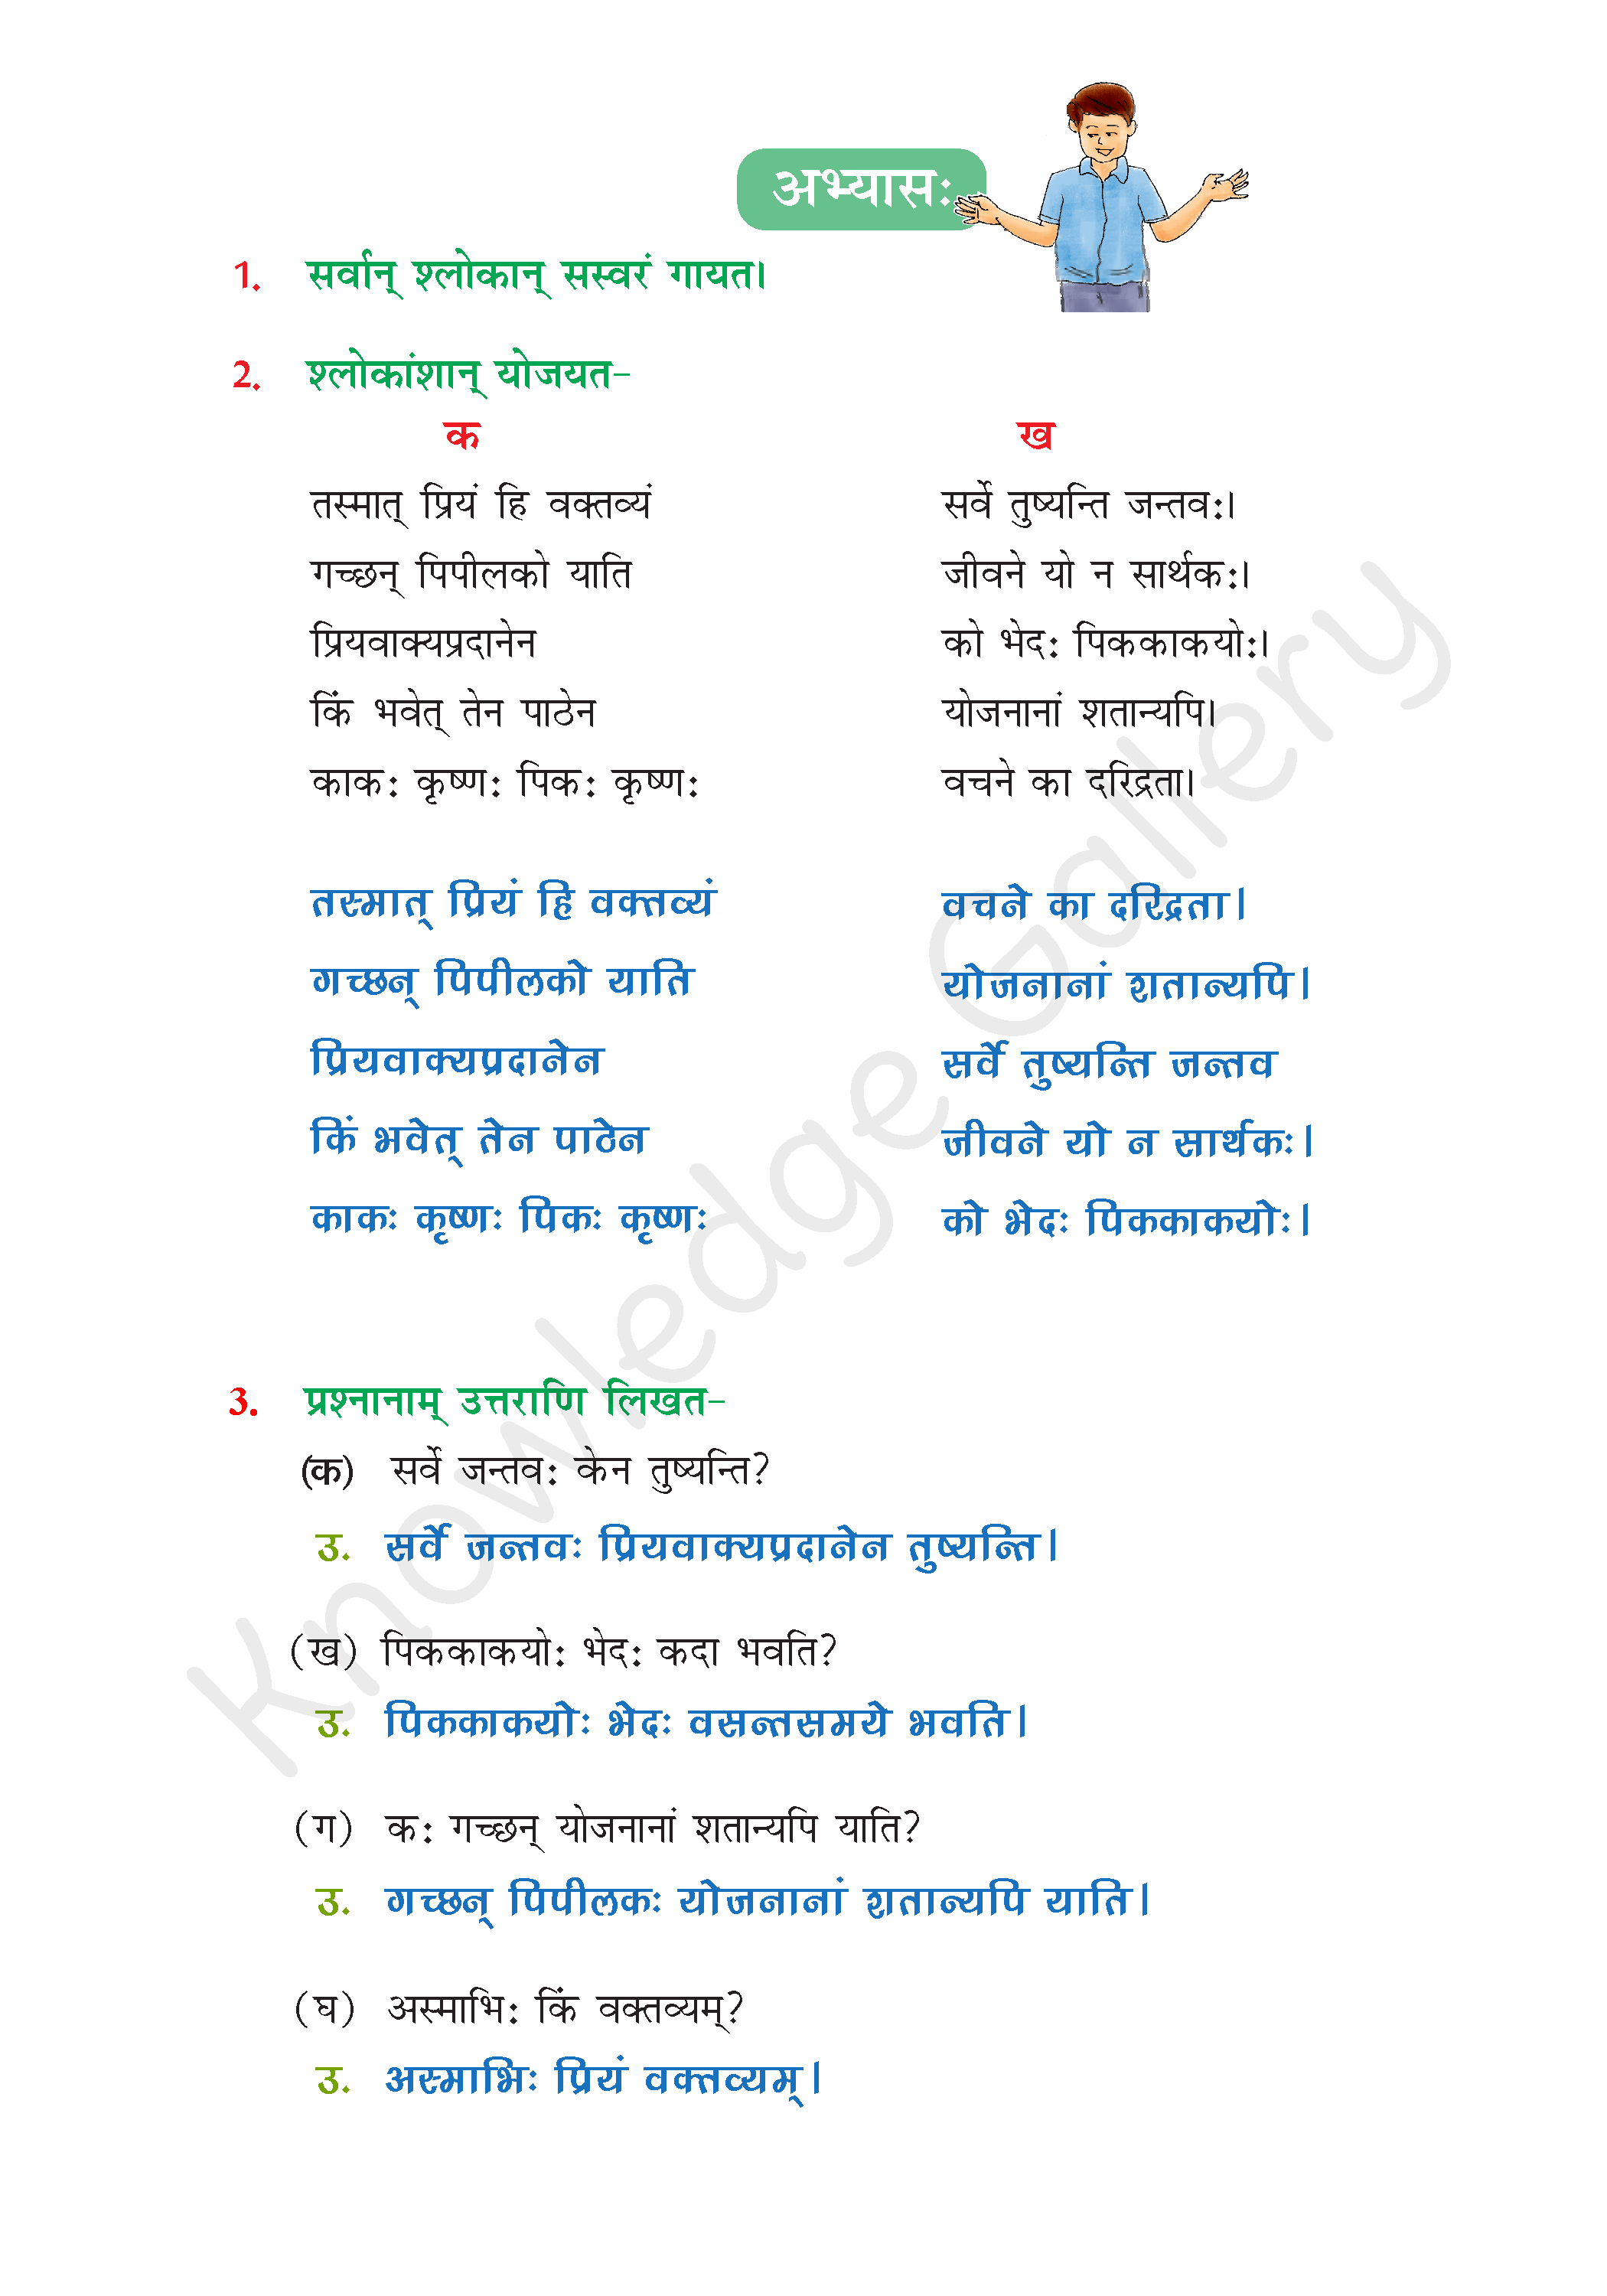 NCERT Solution For Class 6 Sanskrit Chapter 8 part 4